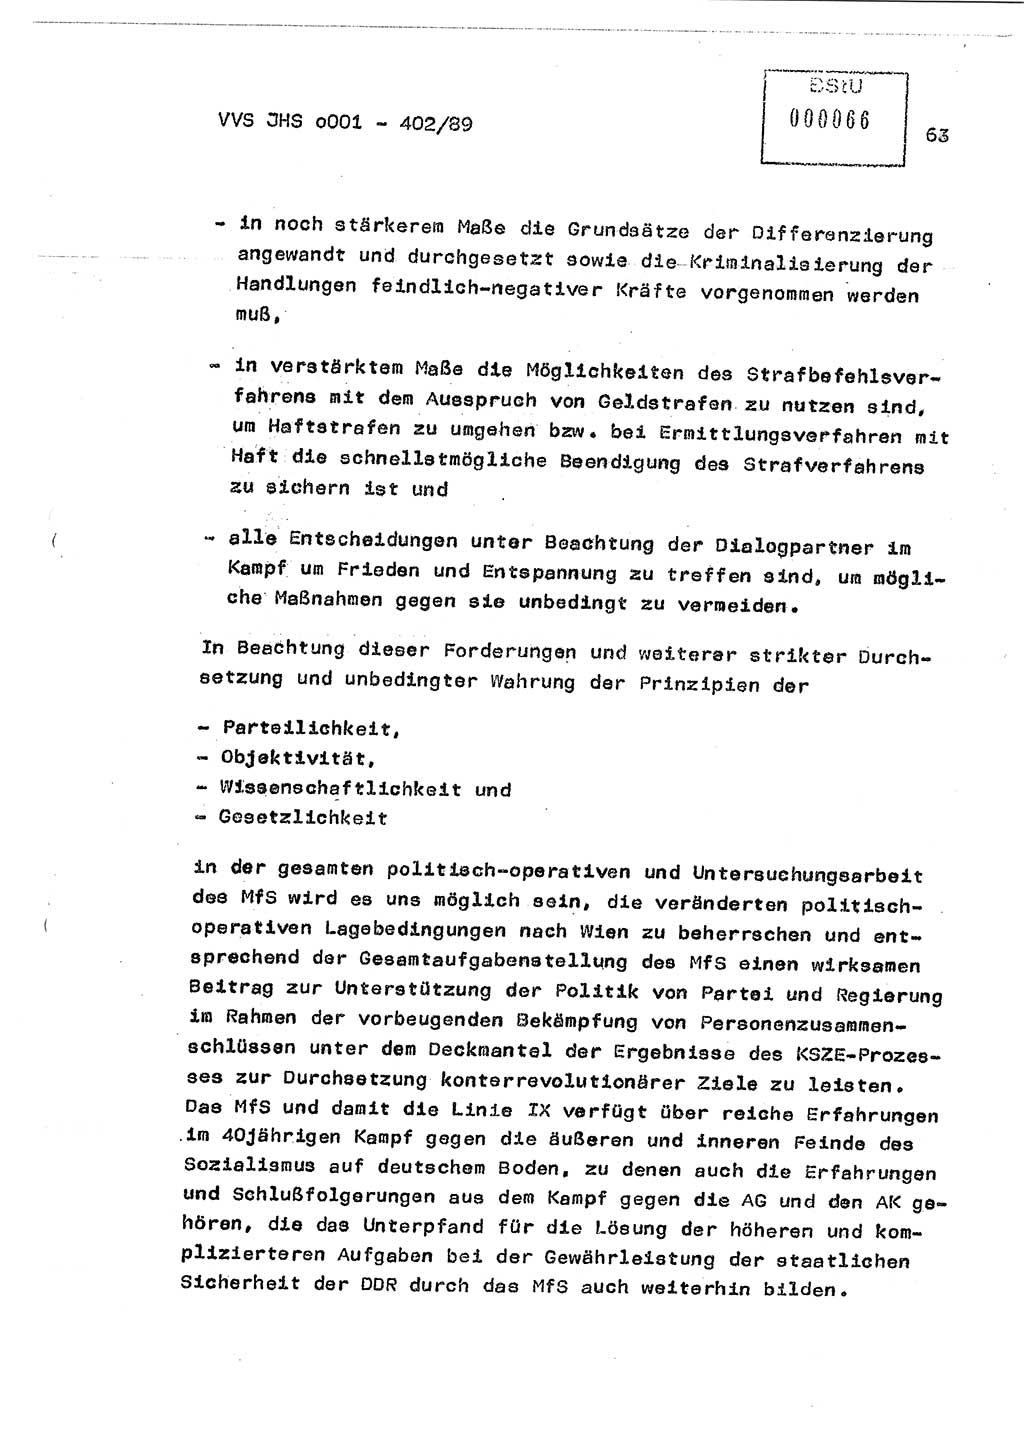 Diplomarbeit Major Günter Müller (HA Ⅸ/9), Ministerium für Staatssicherheit (MfS) [Deutsche Demokratische Republik (DDR)], Juristische Hochschule (JHS), Vertrauliche Verschlußsache (VVS) o001-402/89, Potsdam 1989, Seite 63 (Dipl.-Arb. MfS DDR JHS VVS o001-402/89 1989, S. 63)